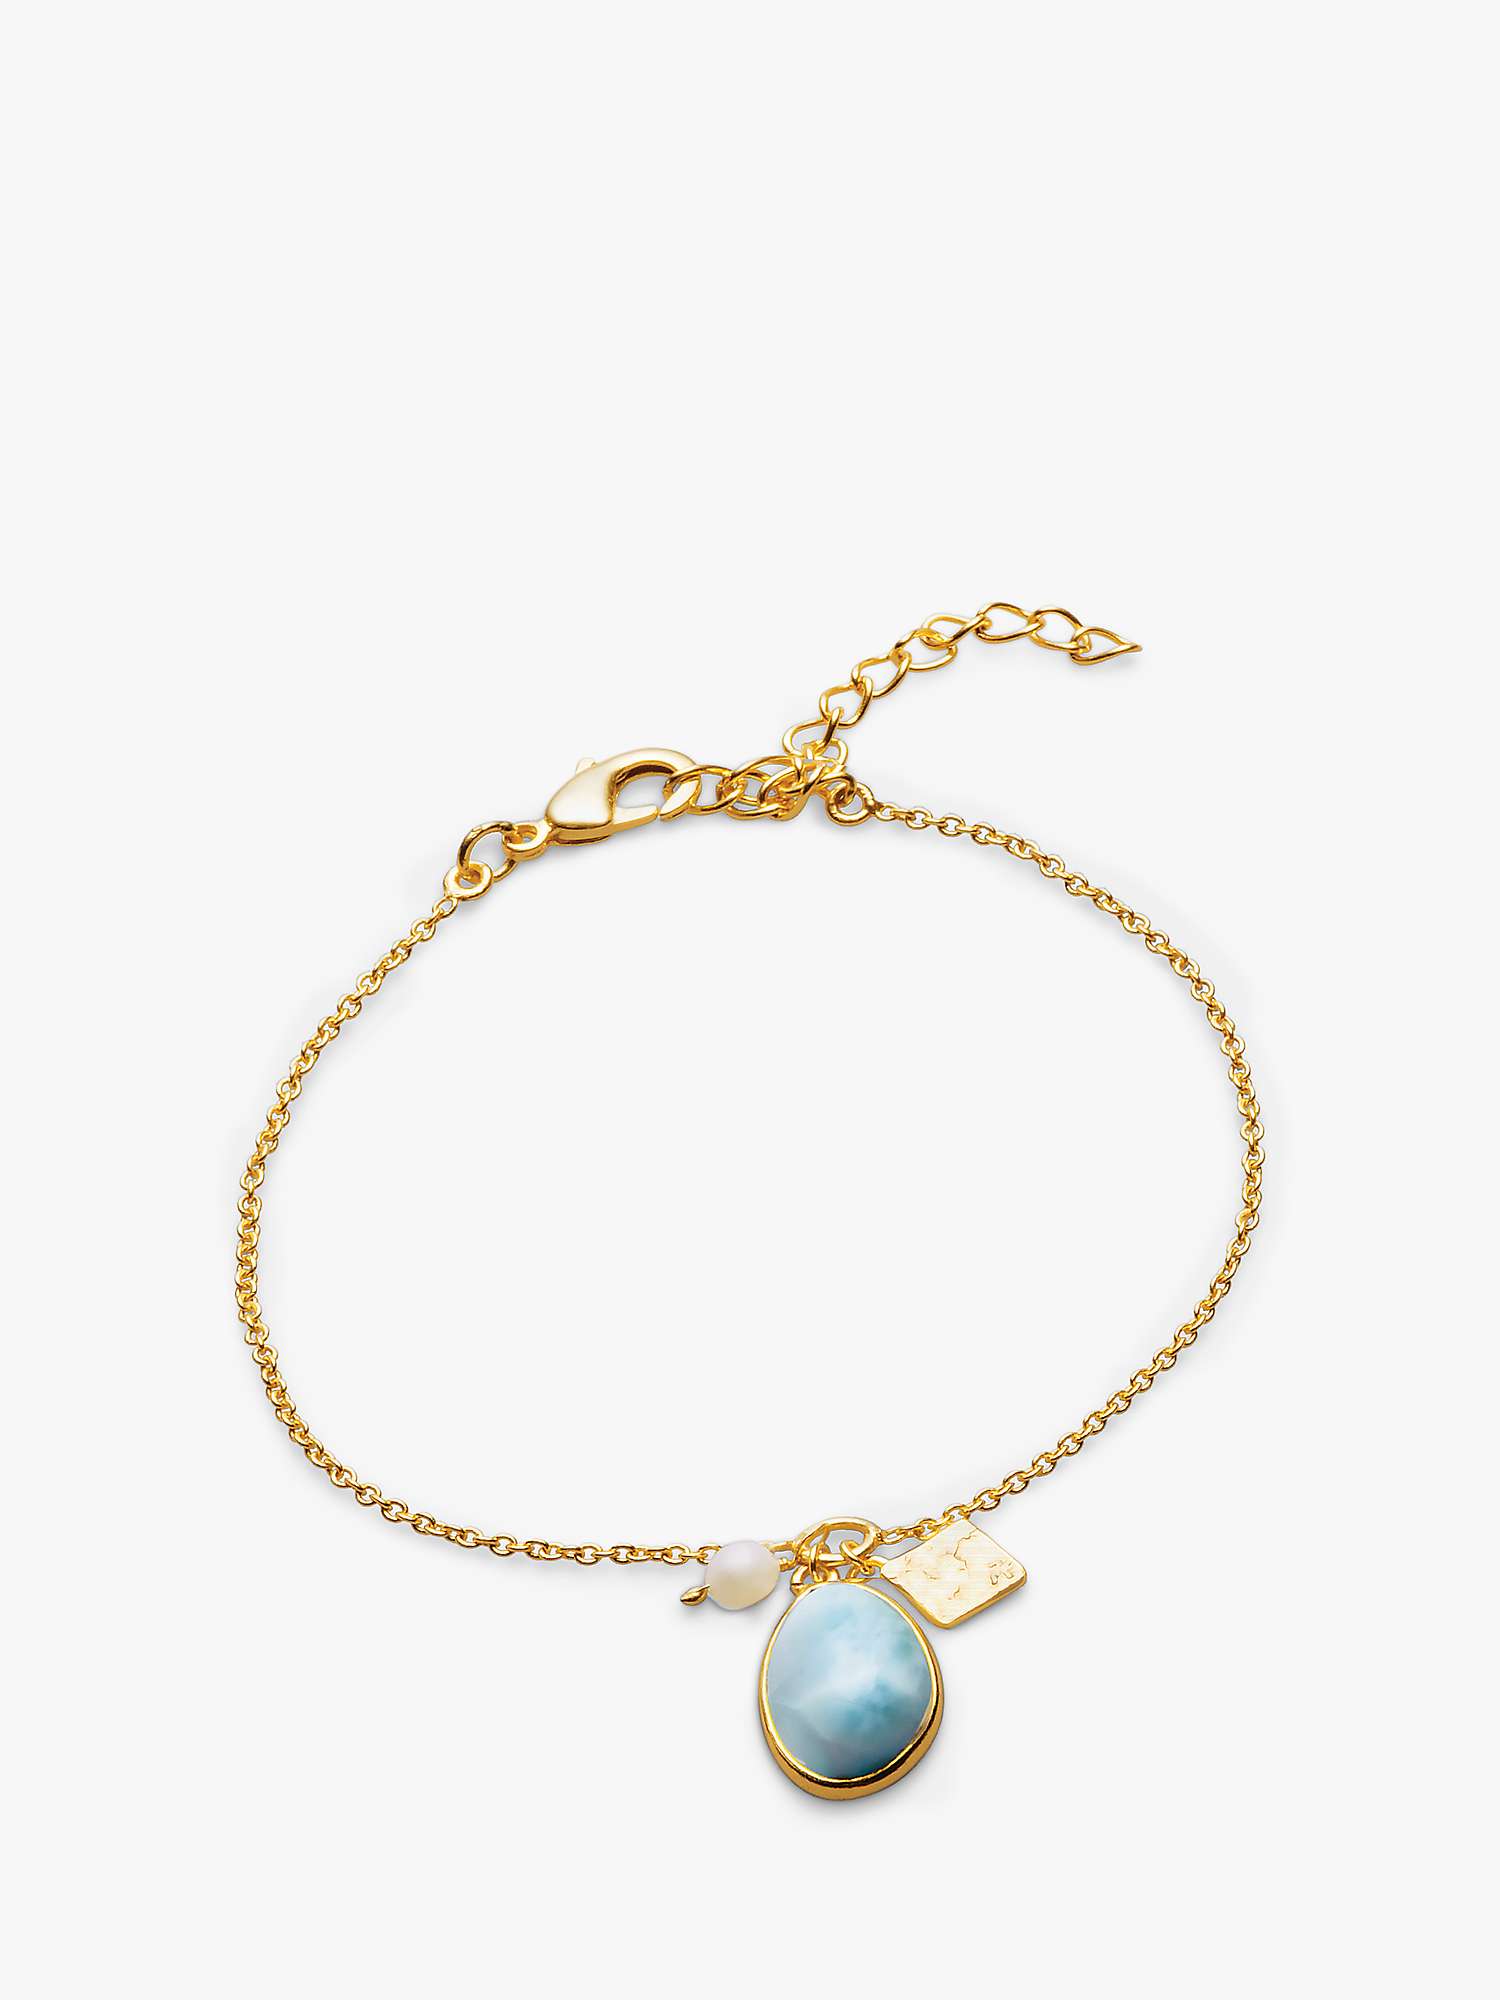 Buy Sarah Alexander Cool Tides Gemstone and Pearl Bracelet, Gold Online at johnlewis.com